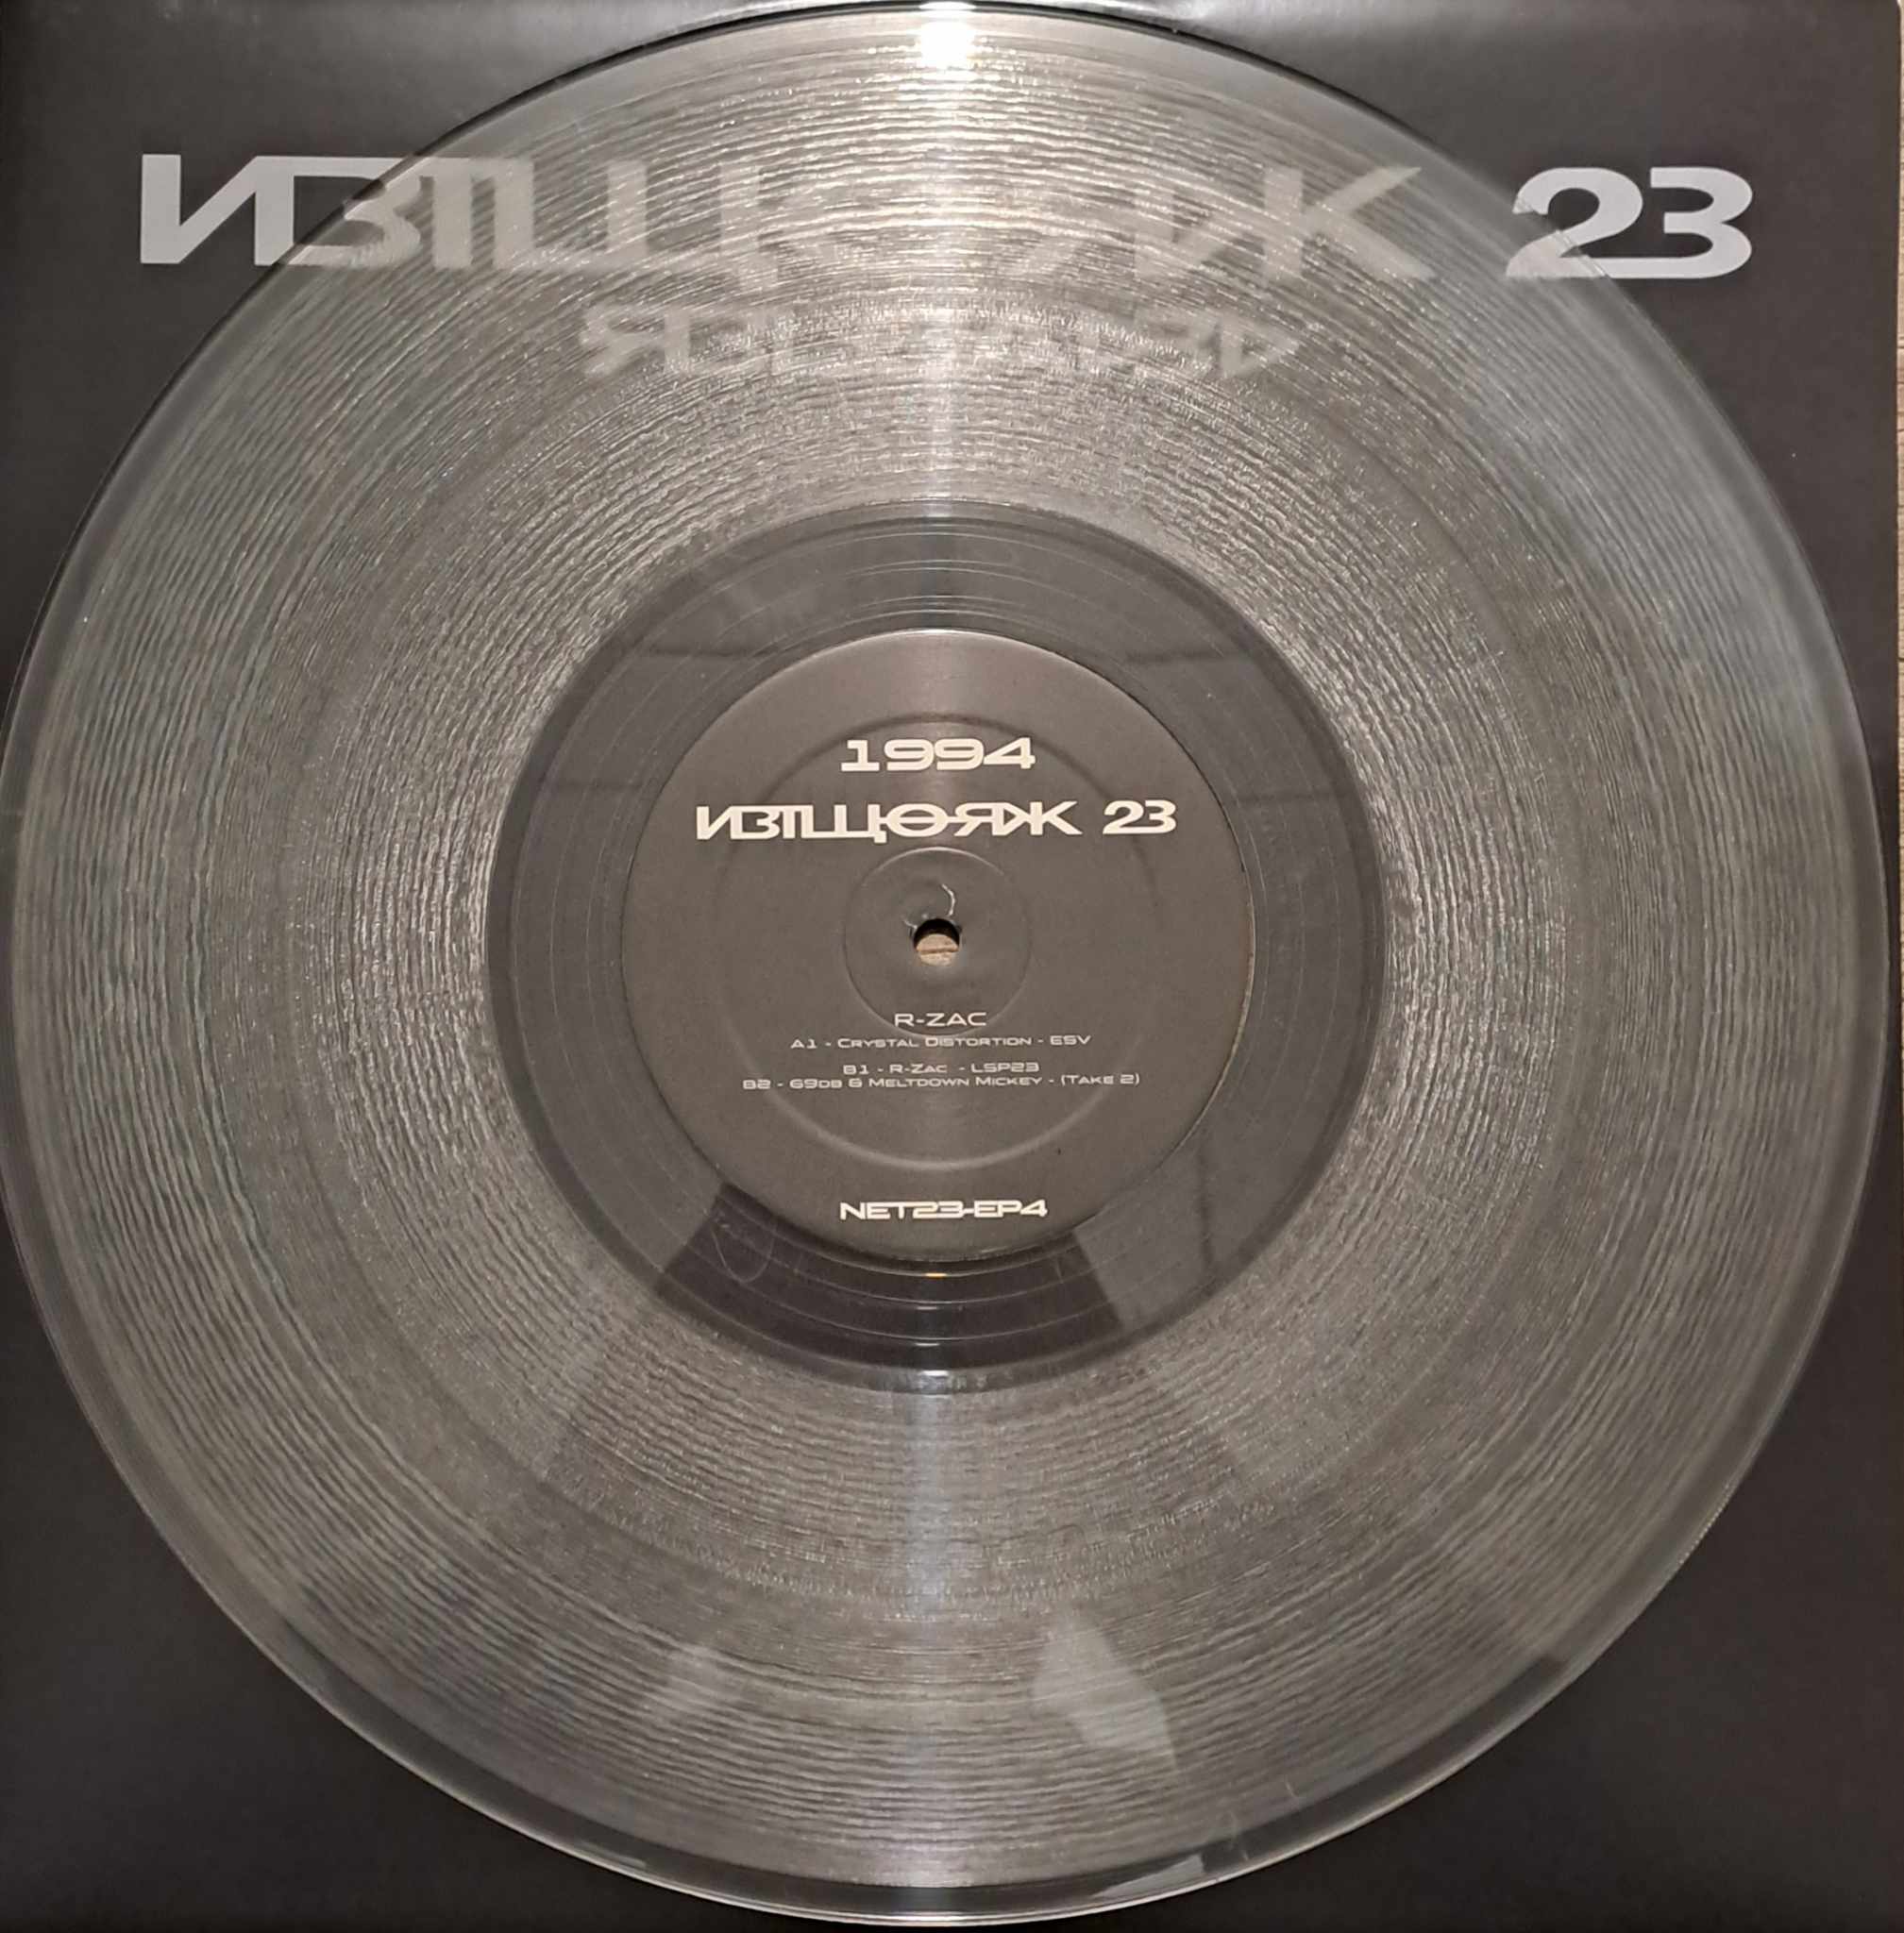 Network23 EP 04 - vinyle freetekno